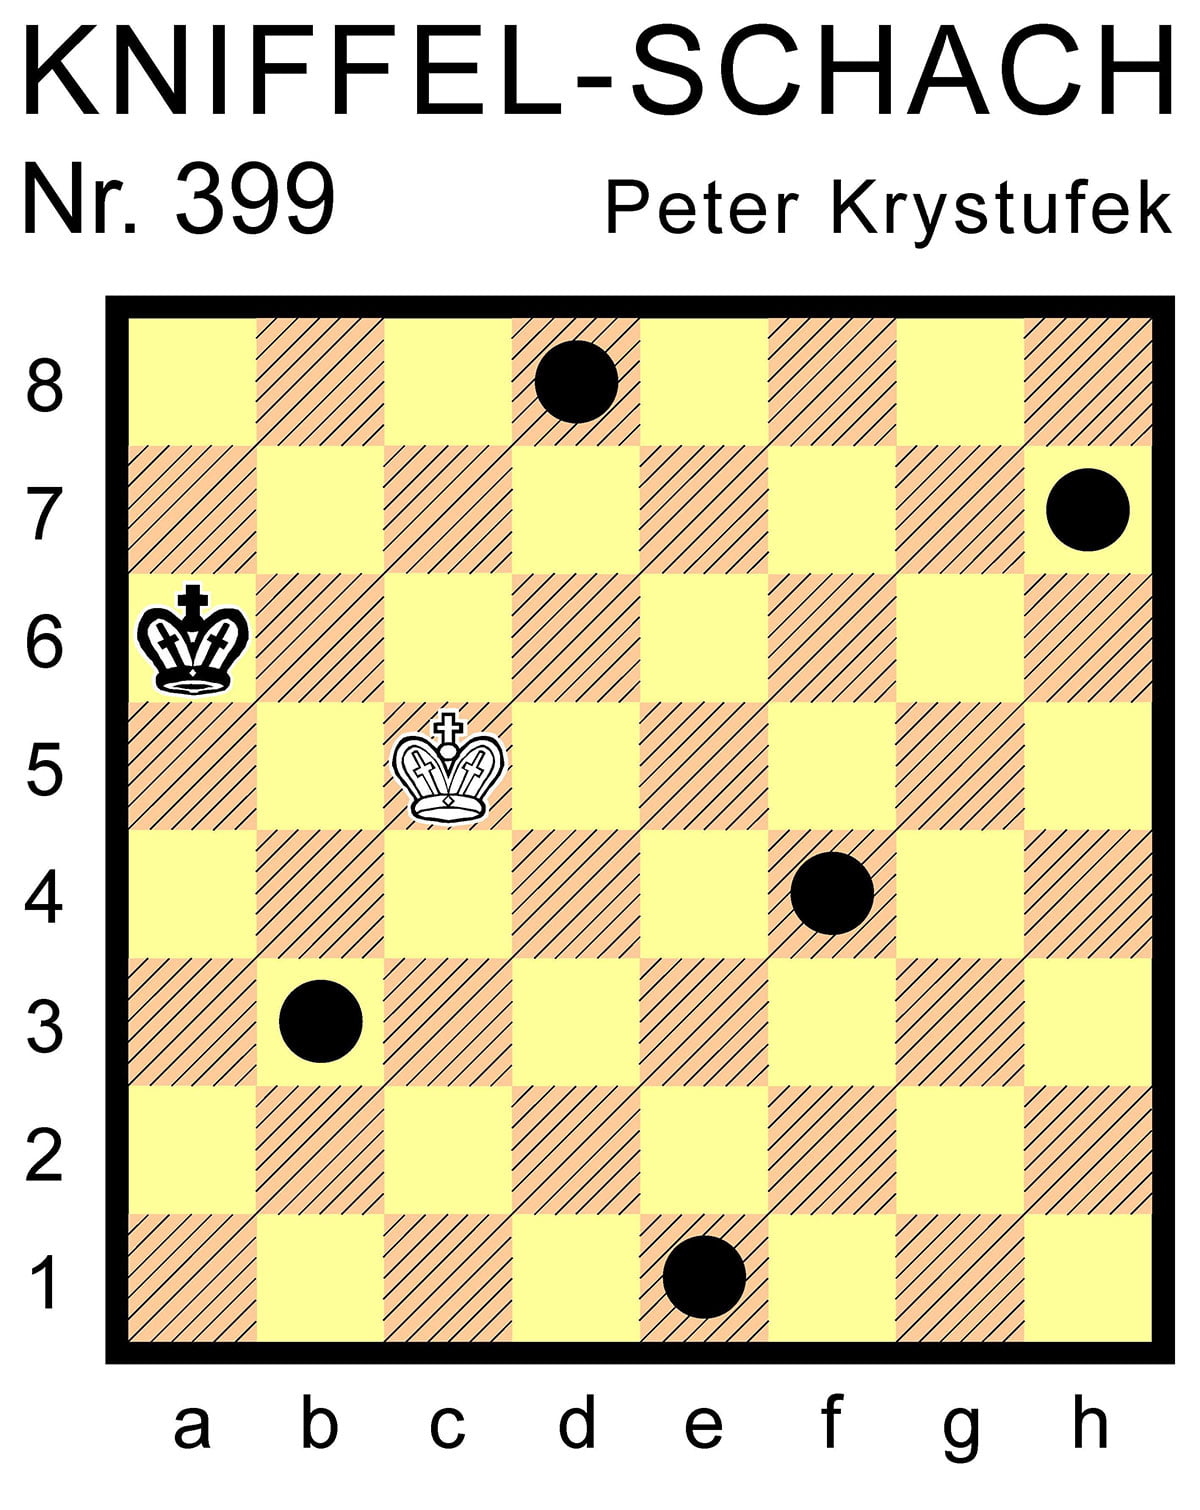 Kniffel-Schach Nr. 399